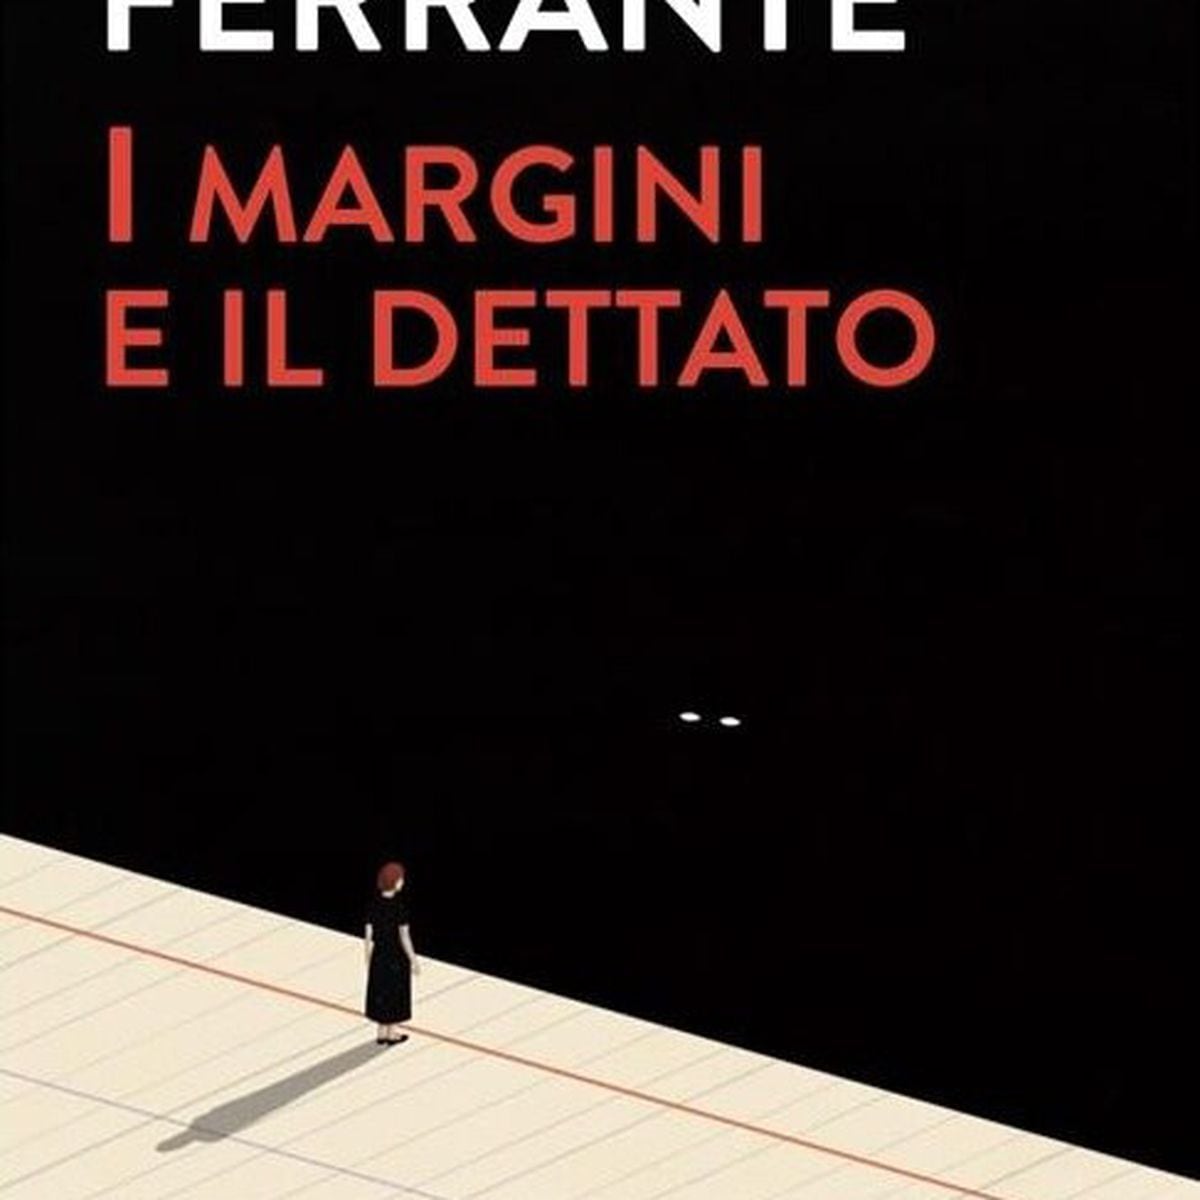 Livro As Margens e o Ditado Elena Ferrante - Livros de Literatura